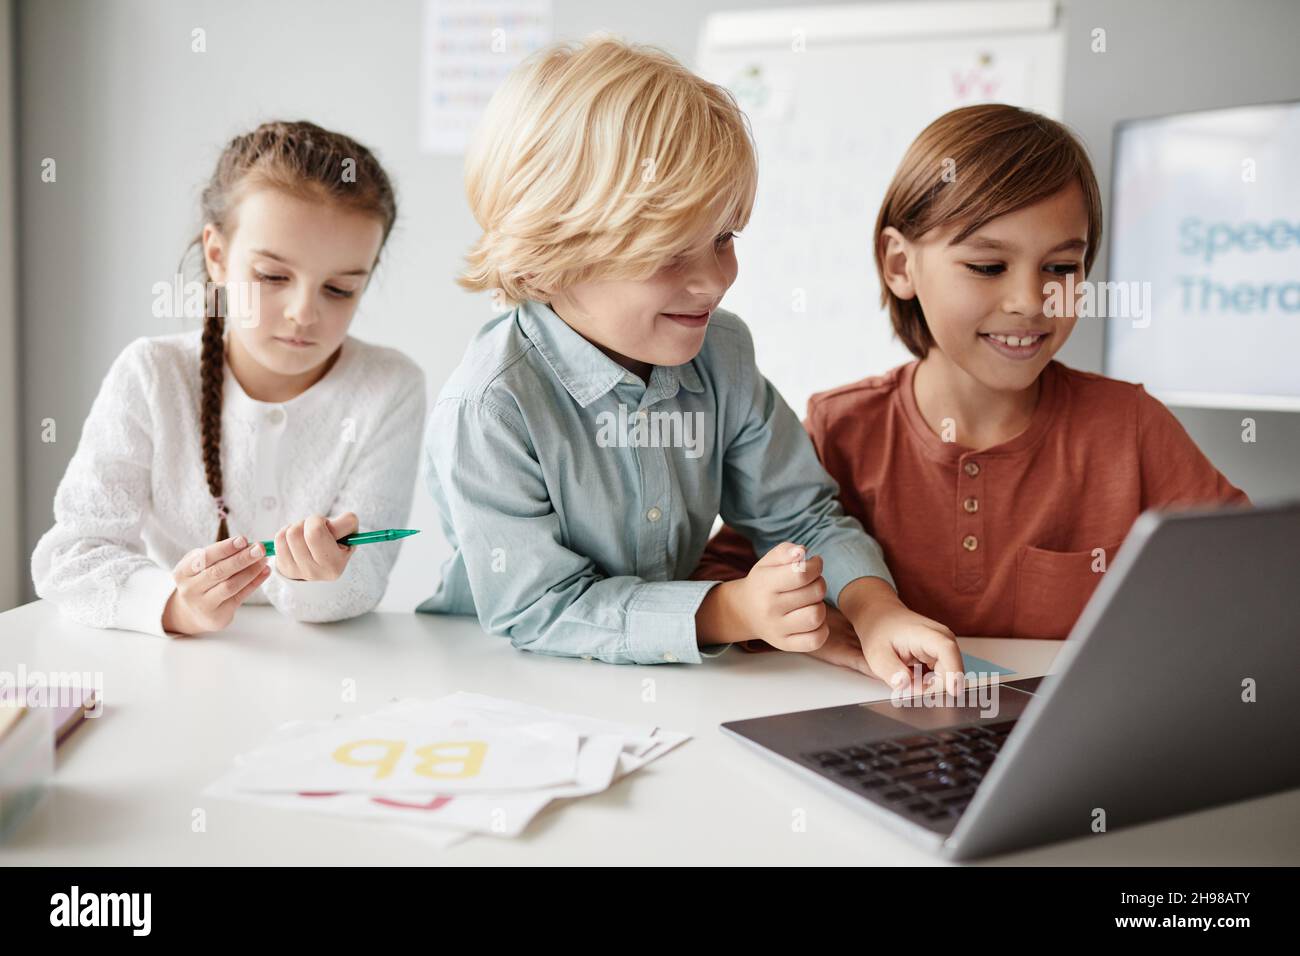 Groupe d'enfants assis à la table et dactylographiant sur ordinateur portable pendant une leçon, ils étudient en ligne Banque D'Images